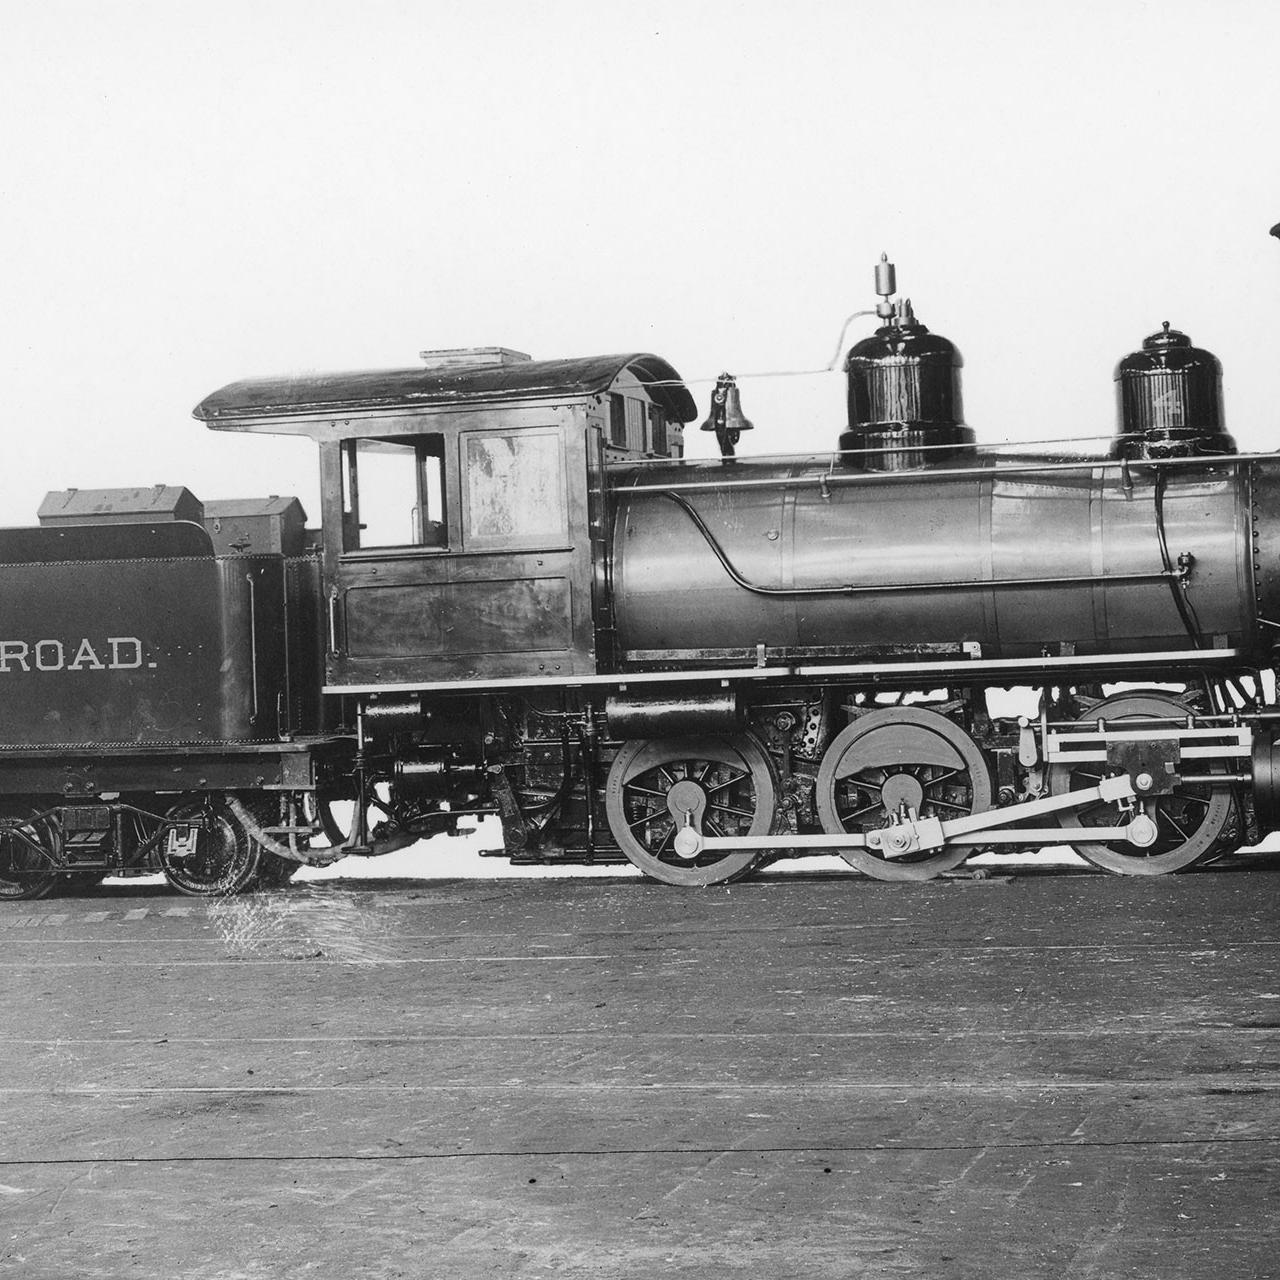 Tonopah Railroad